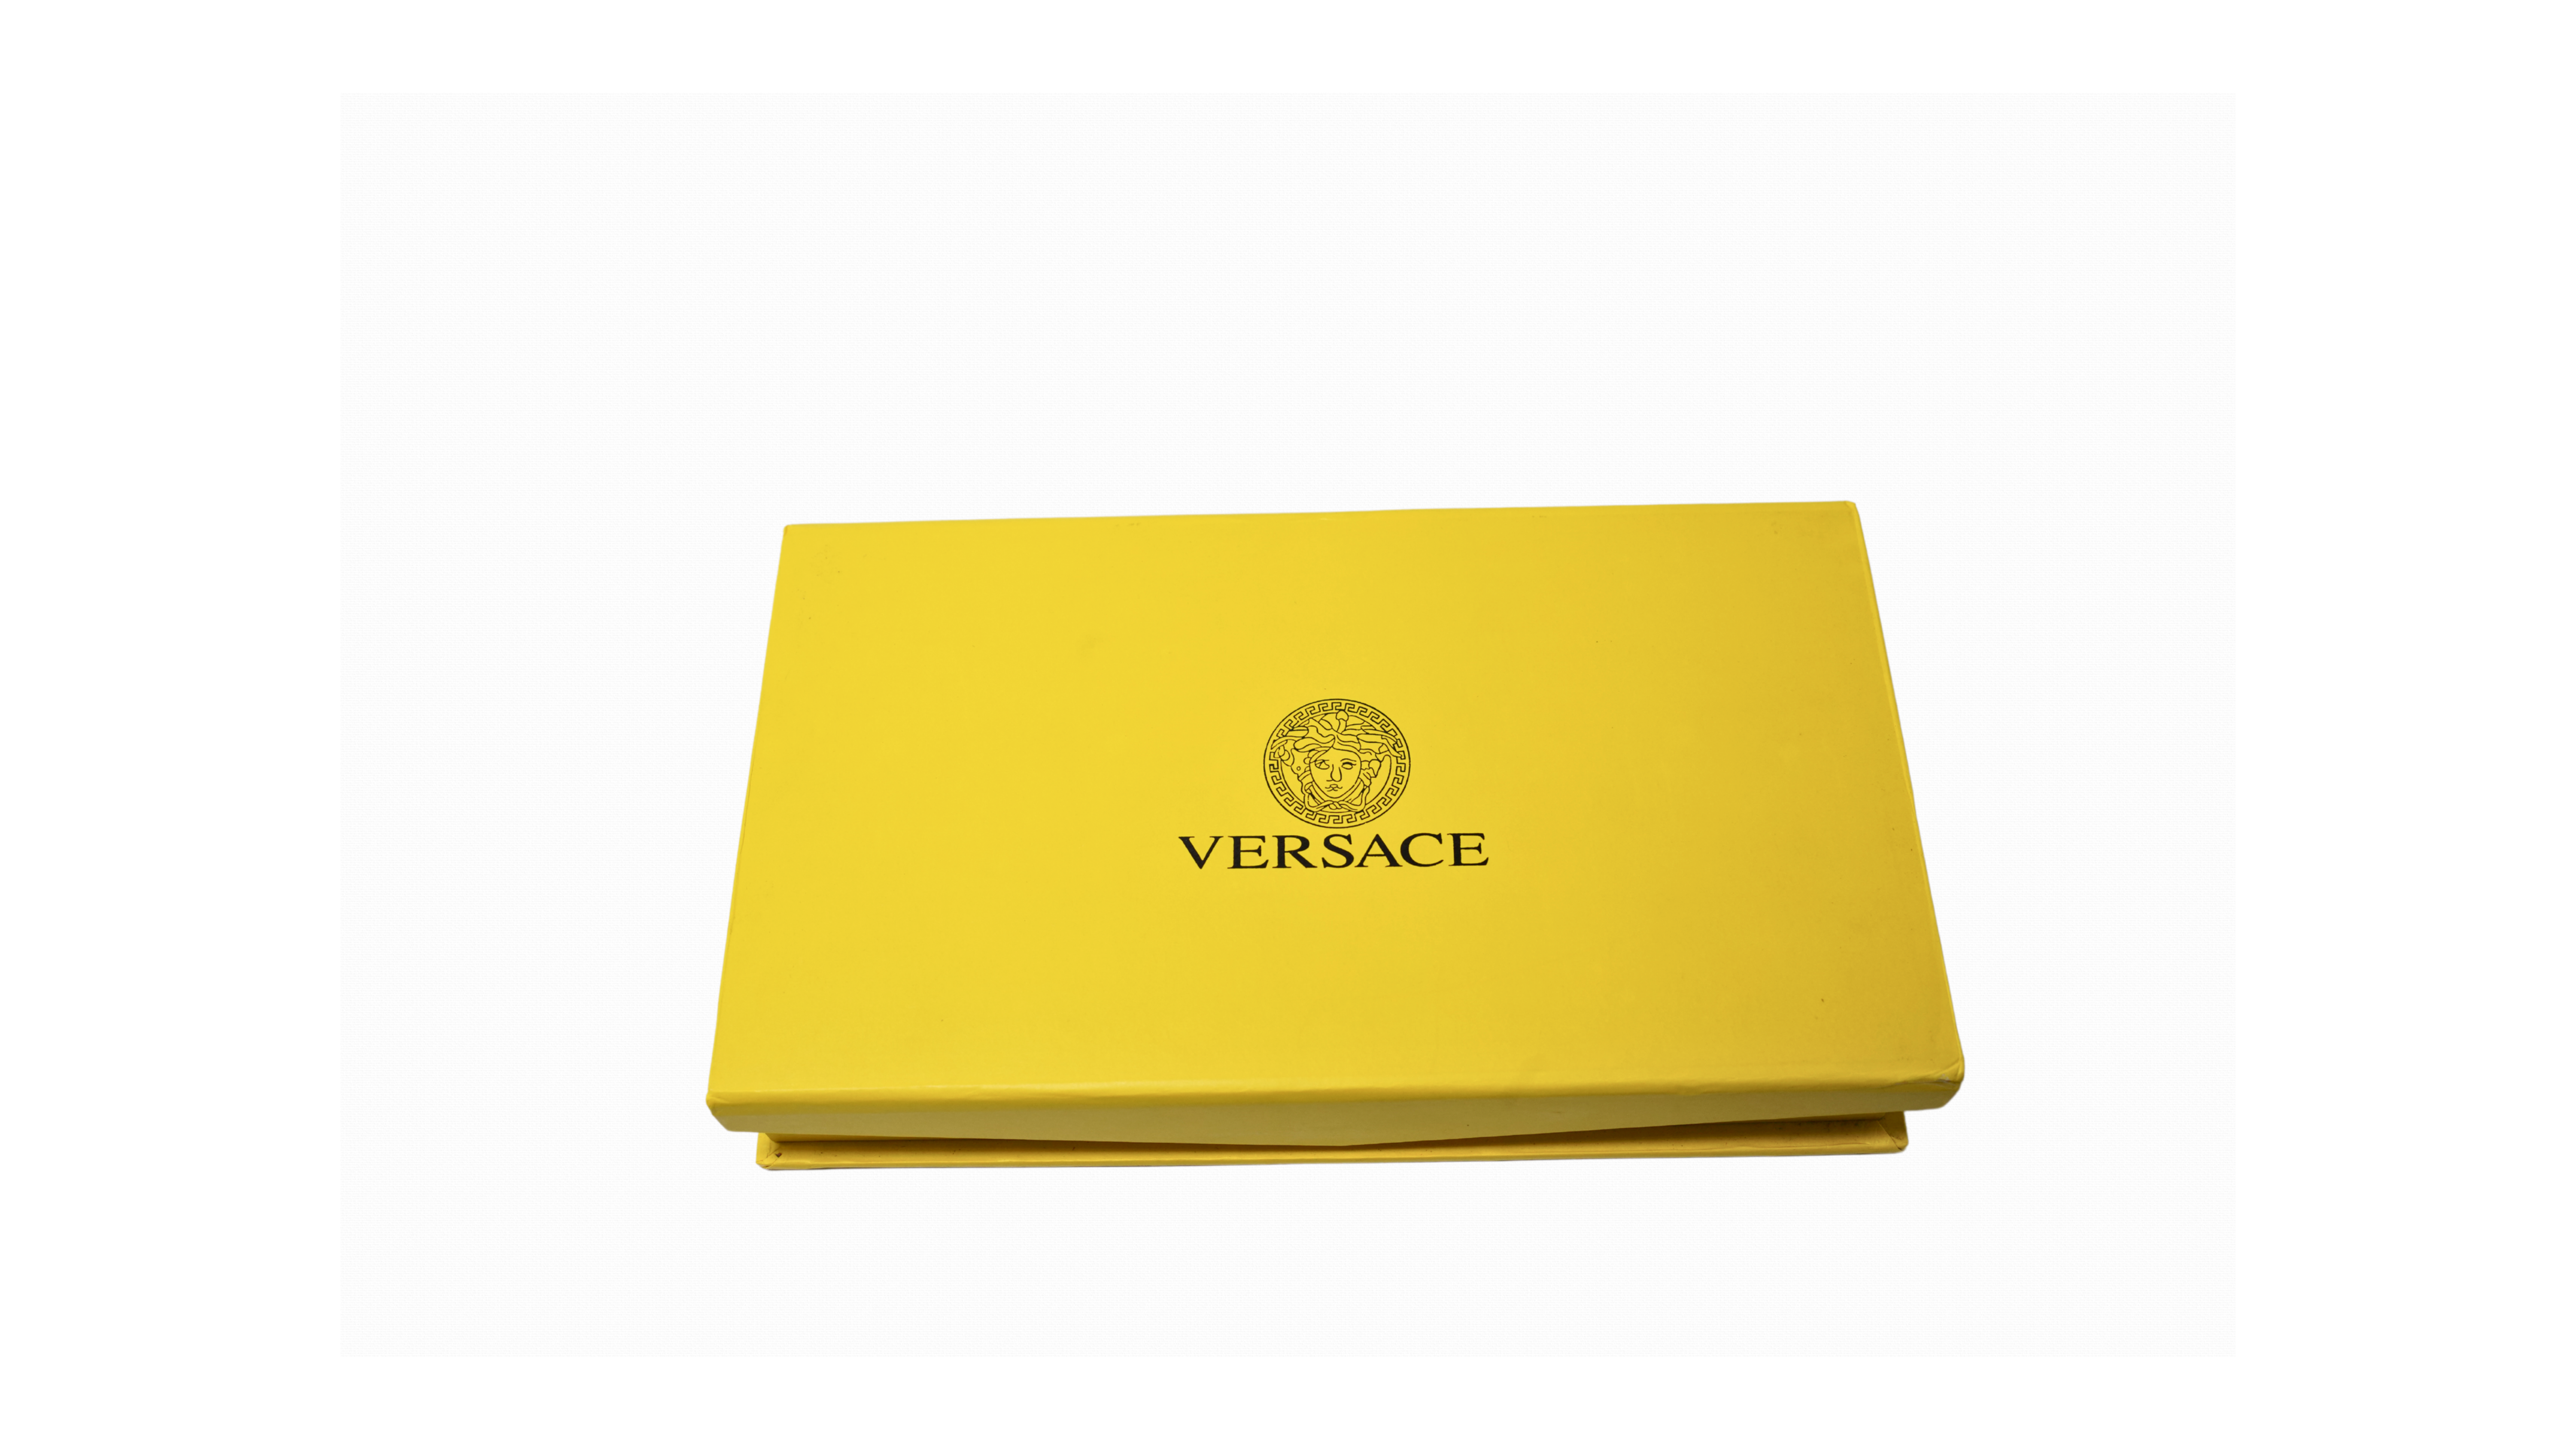 Versace branded premium wallet for men